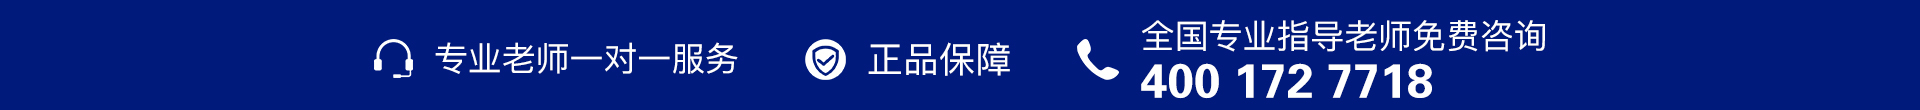 蓝色电话-banner图下方-PC - 副本 (3).jpg